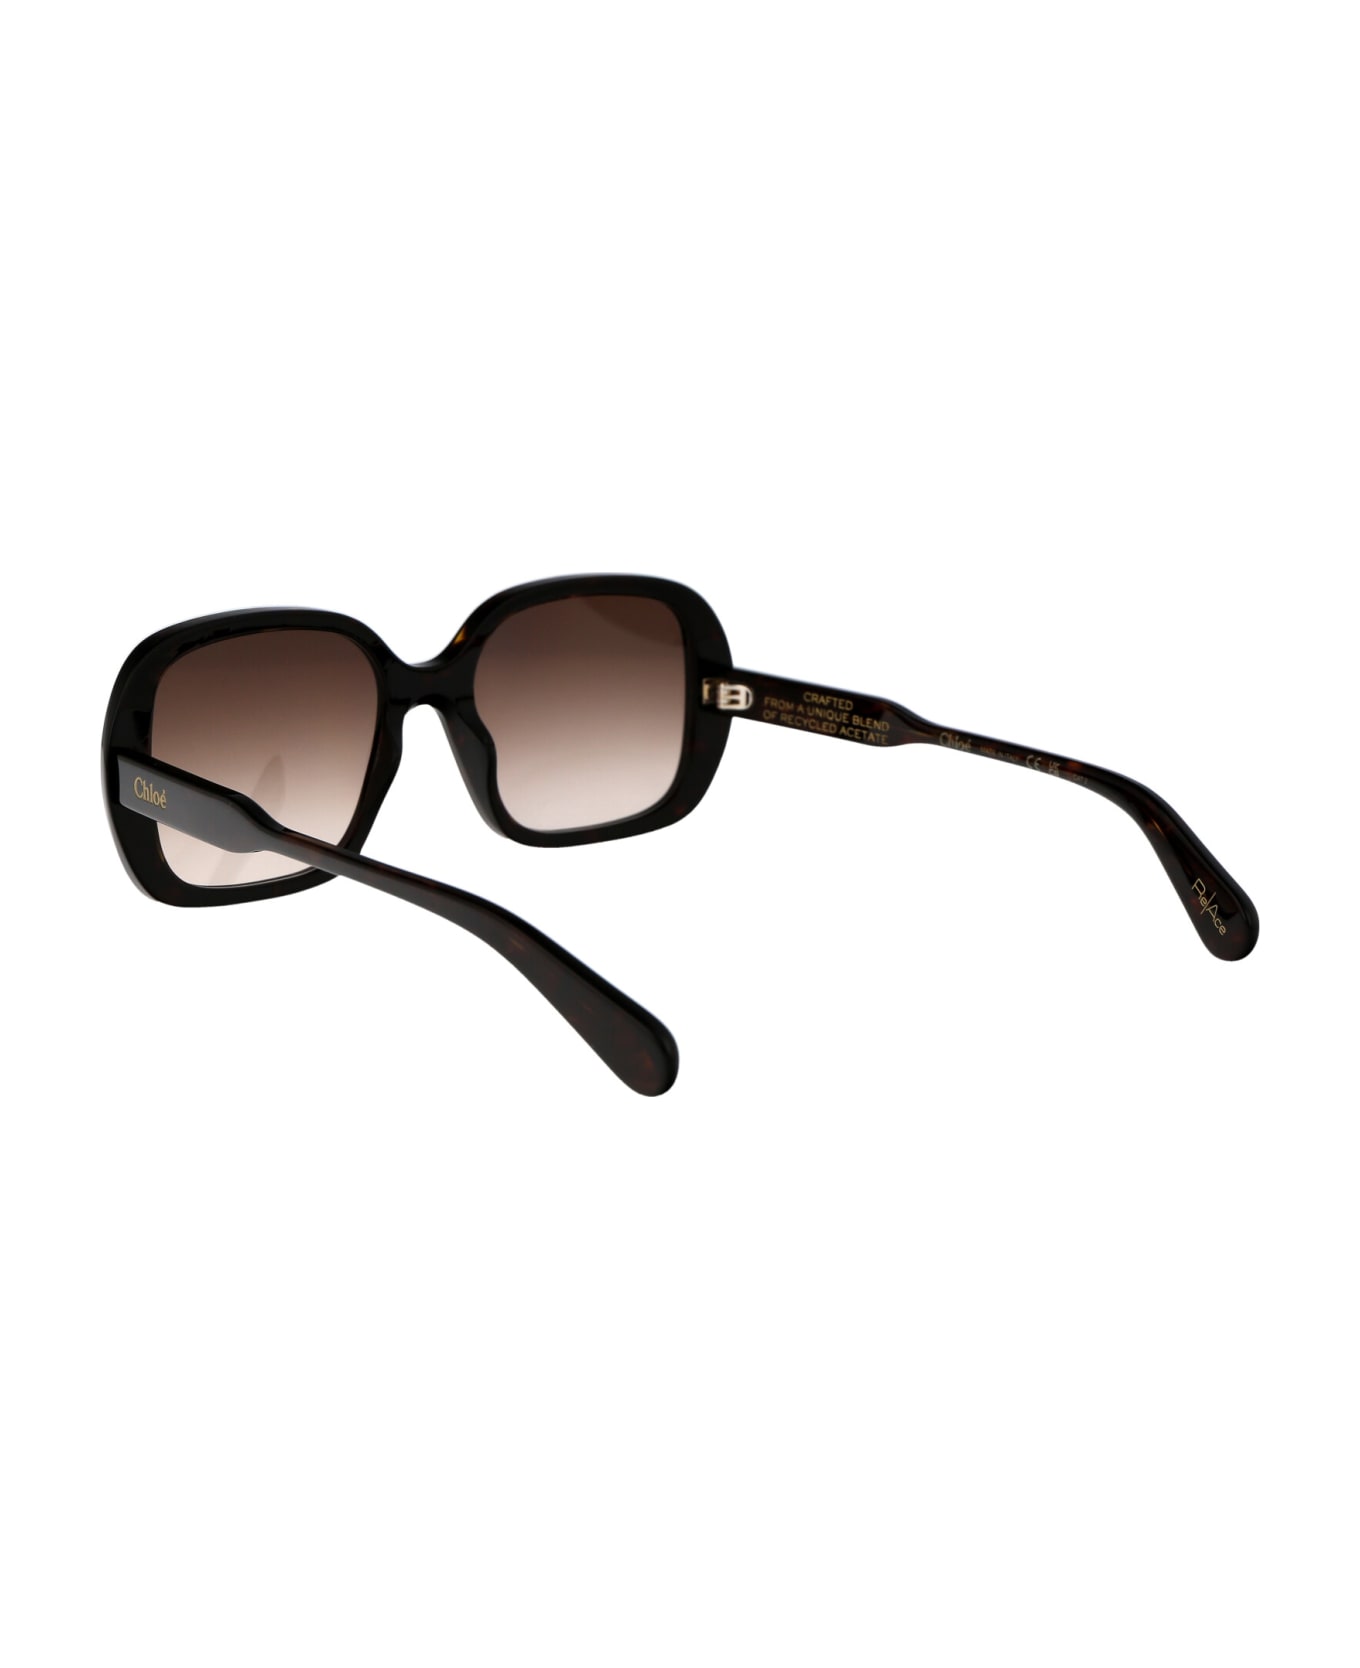 Chloé Eyewear Ch0222s Sunglasses - 002 HAVANA HAVANA BROWN